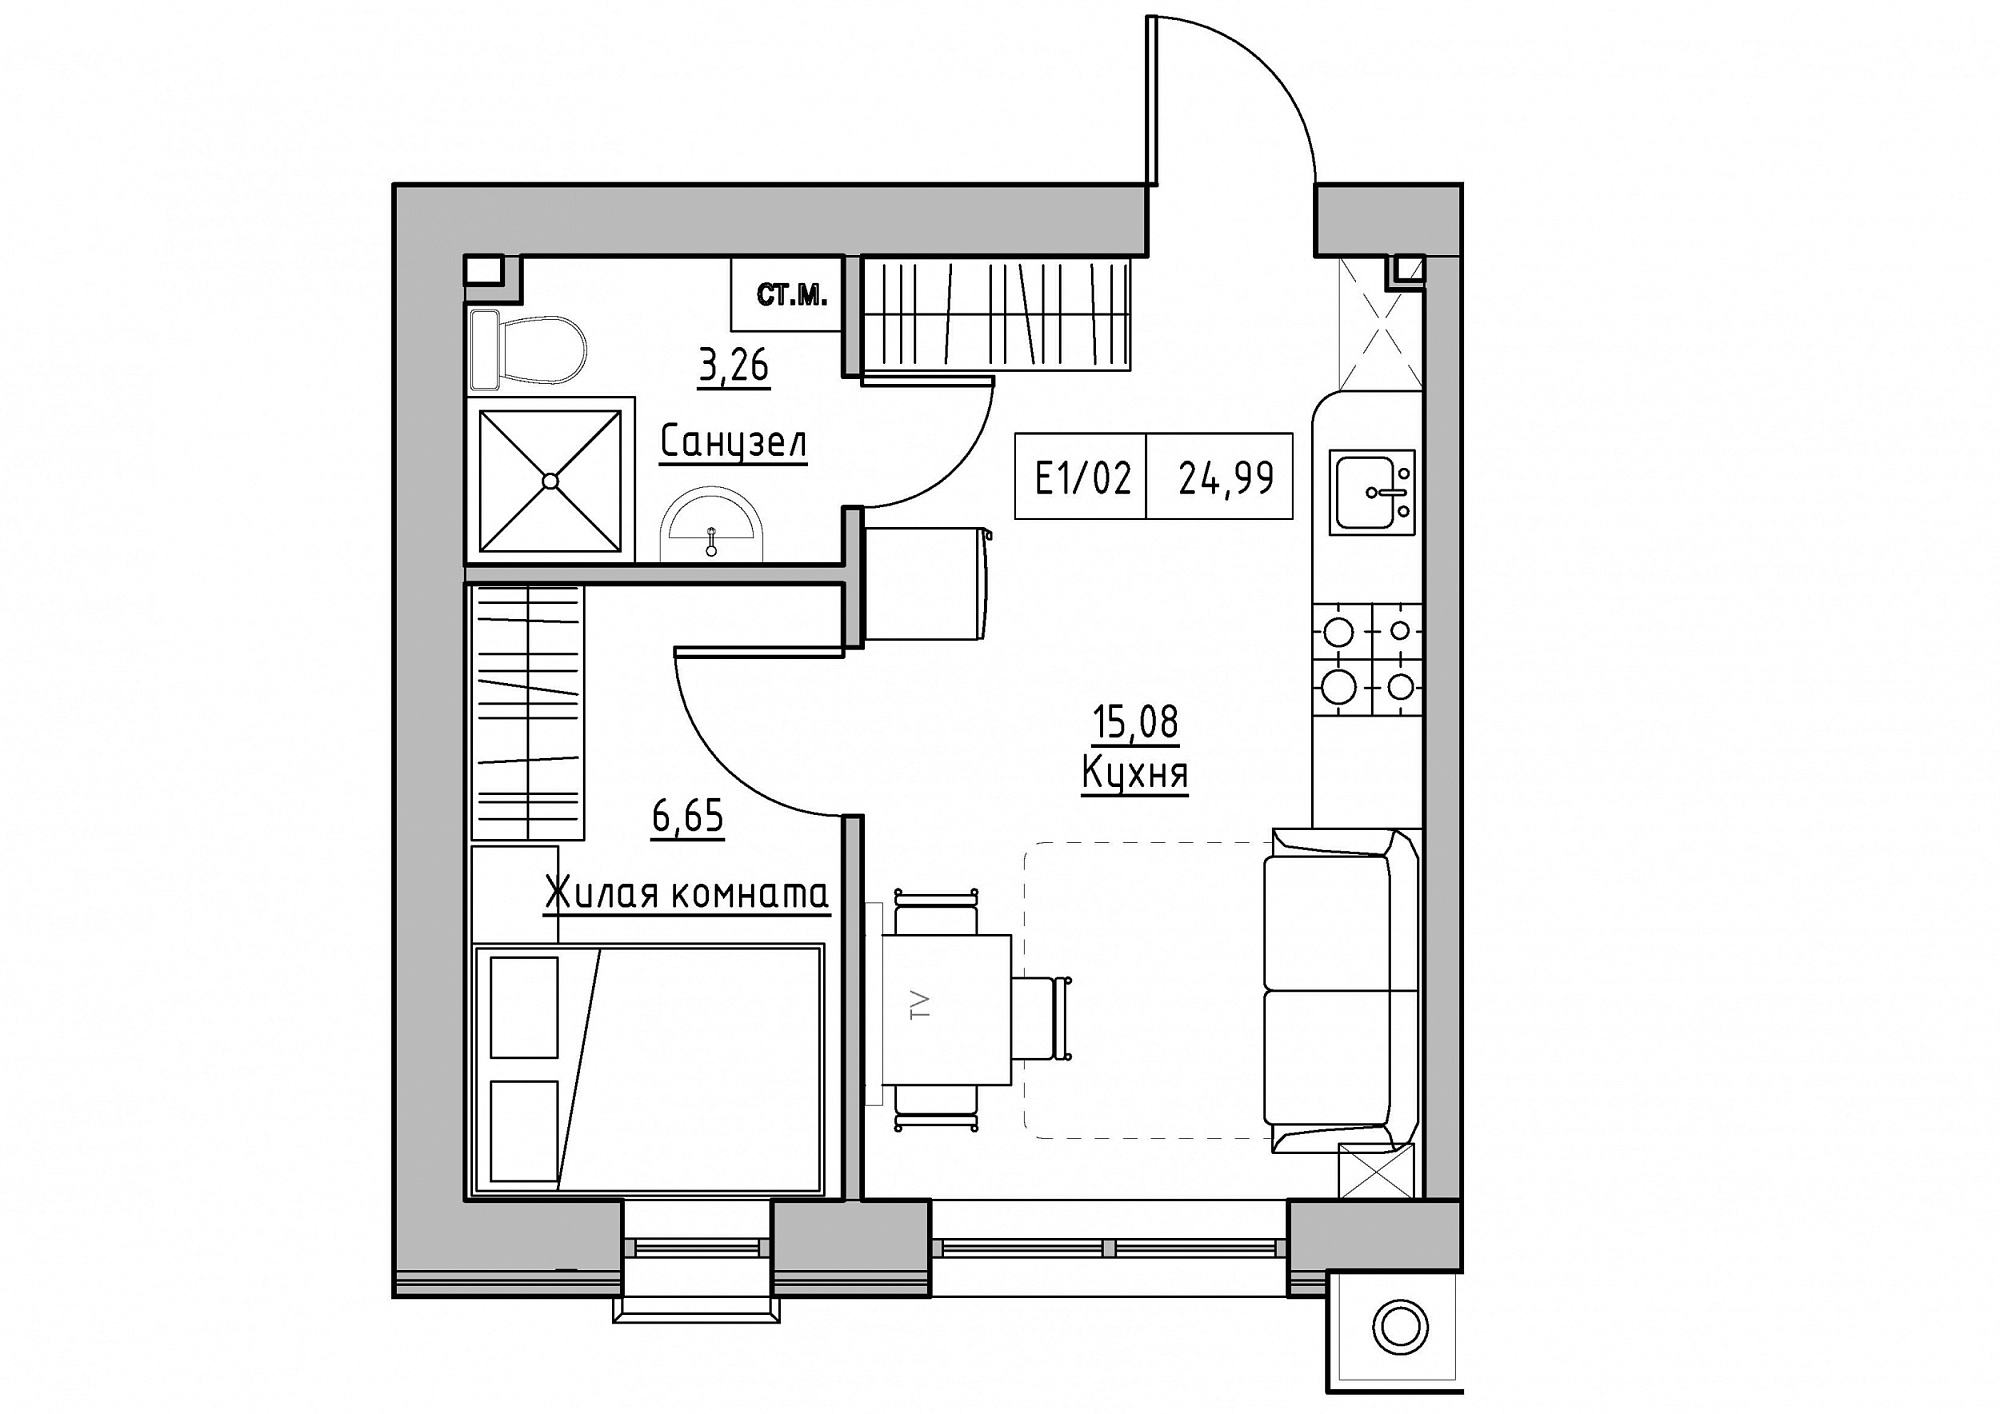 Планування 1-к квартира площею 24.99м2, KS-011-05/0015.